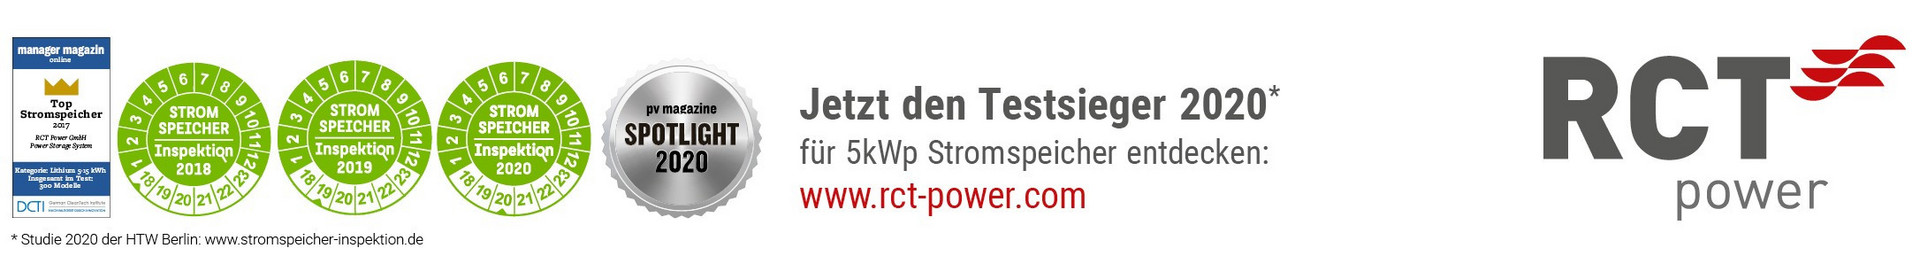 RCT Power Auszeichnungen